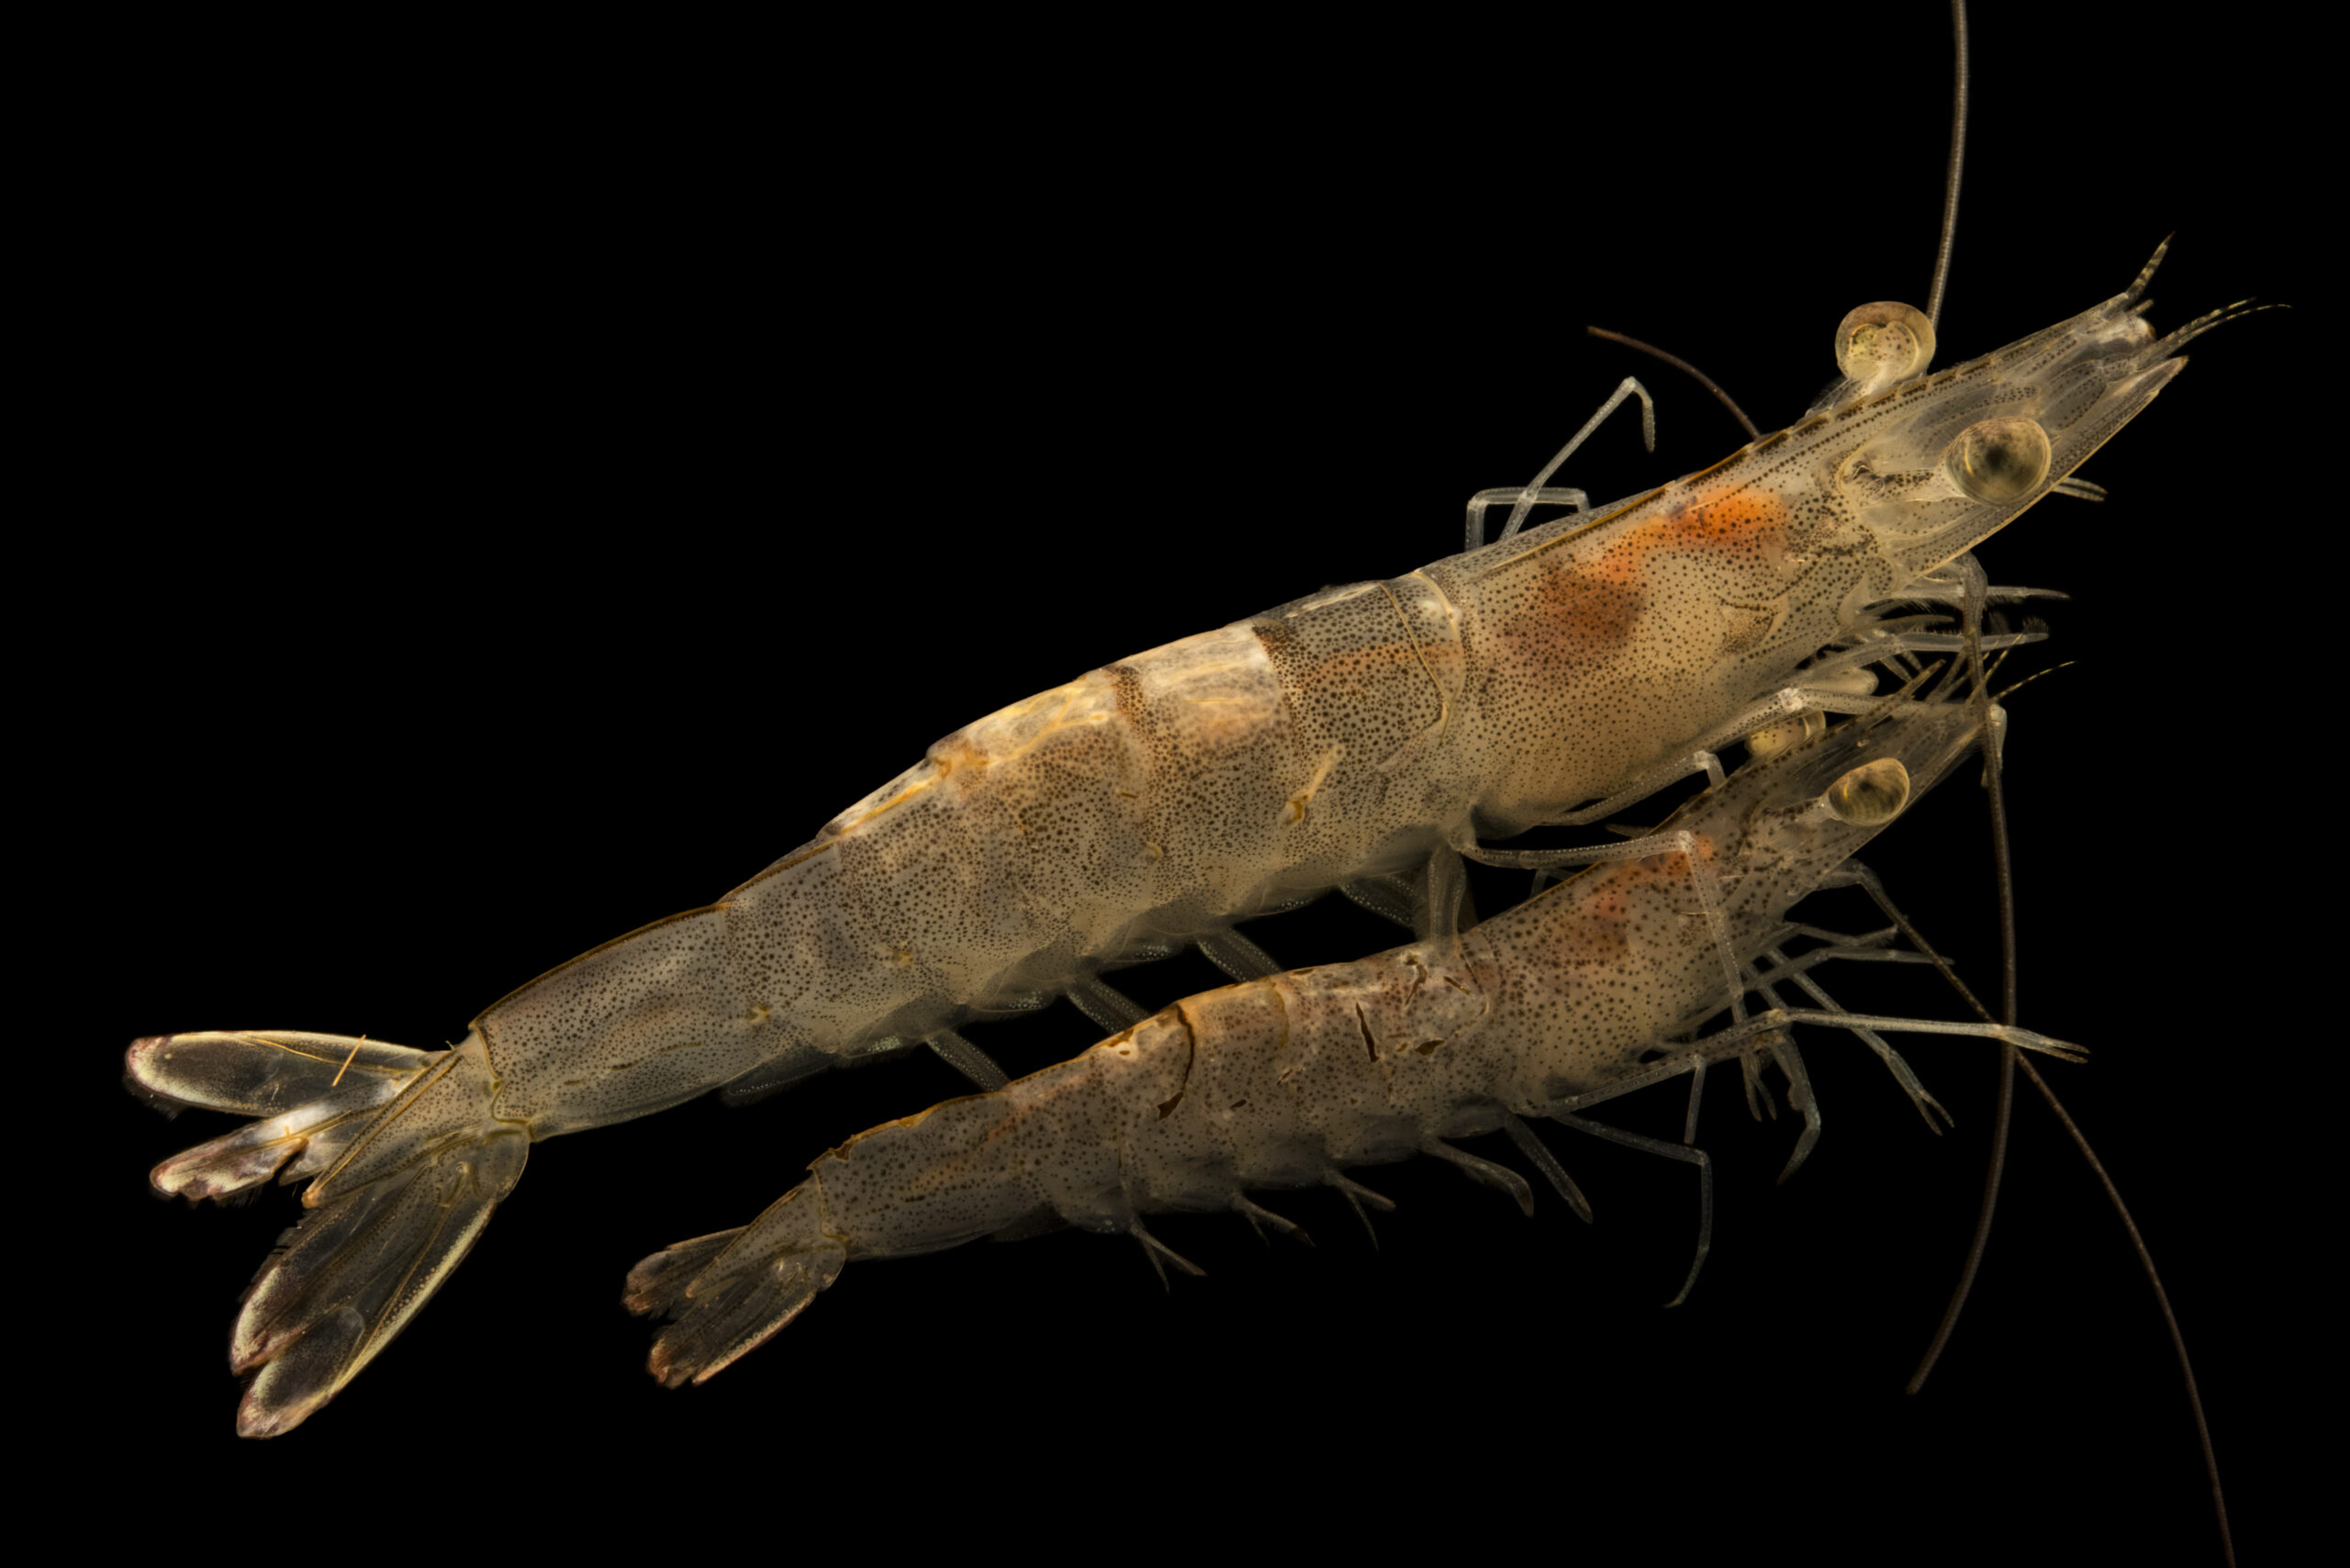 White shrimp (Litopenaeus setiferus) at Gulf Specimen Marine Lab and Aquarium.